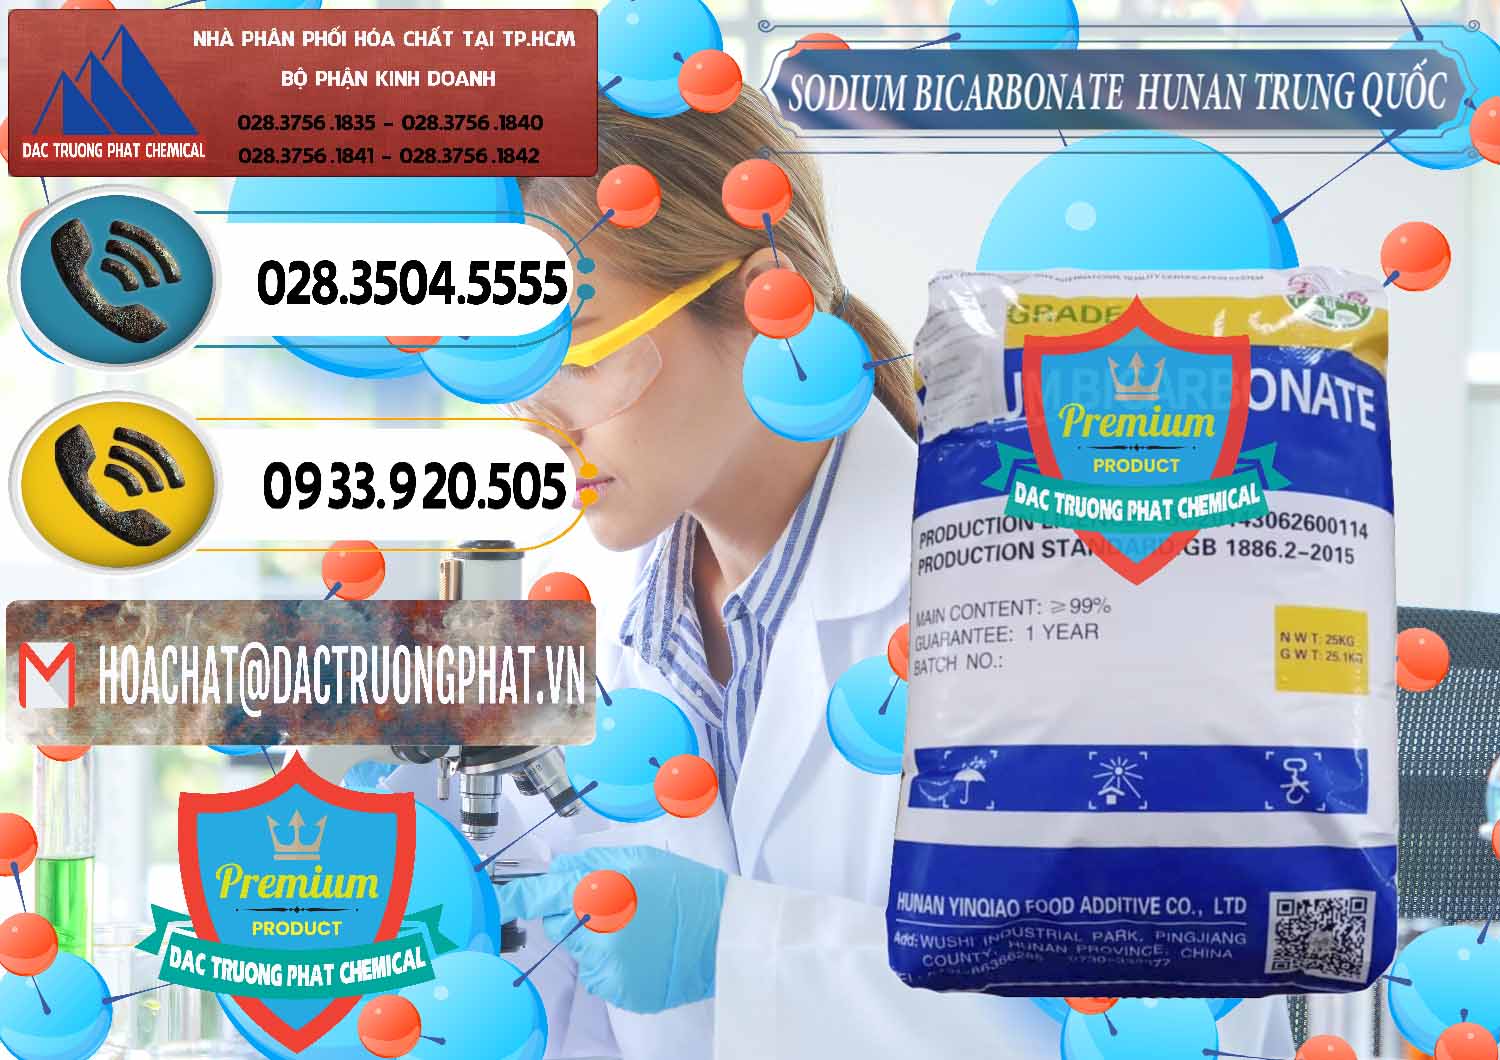 Chuyên bán _ cung cấp Sodium Bicarbonate – Bicar NaHCO3 Hunan Trung Quốc China - 0405 - Chuyên phân phối ( kinh doanh ) hóa chất tại TP.HCM - hoachatdetnhuom.vn